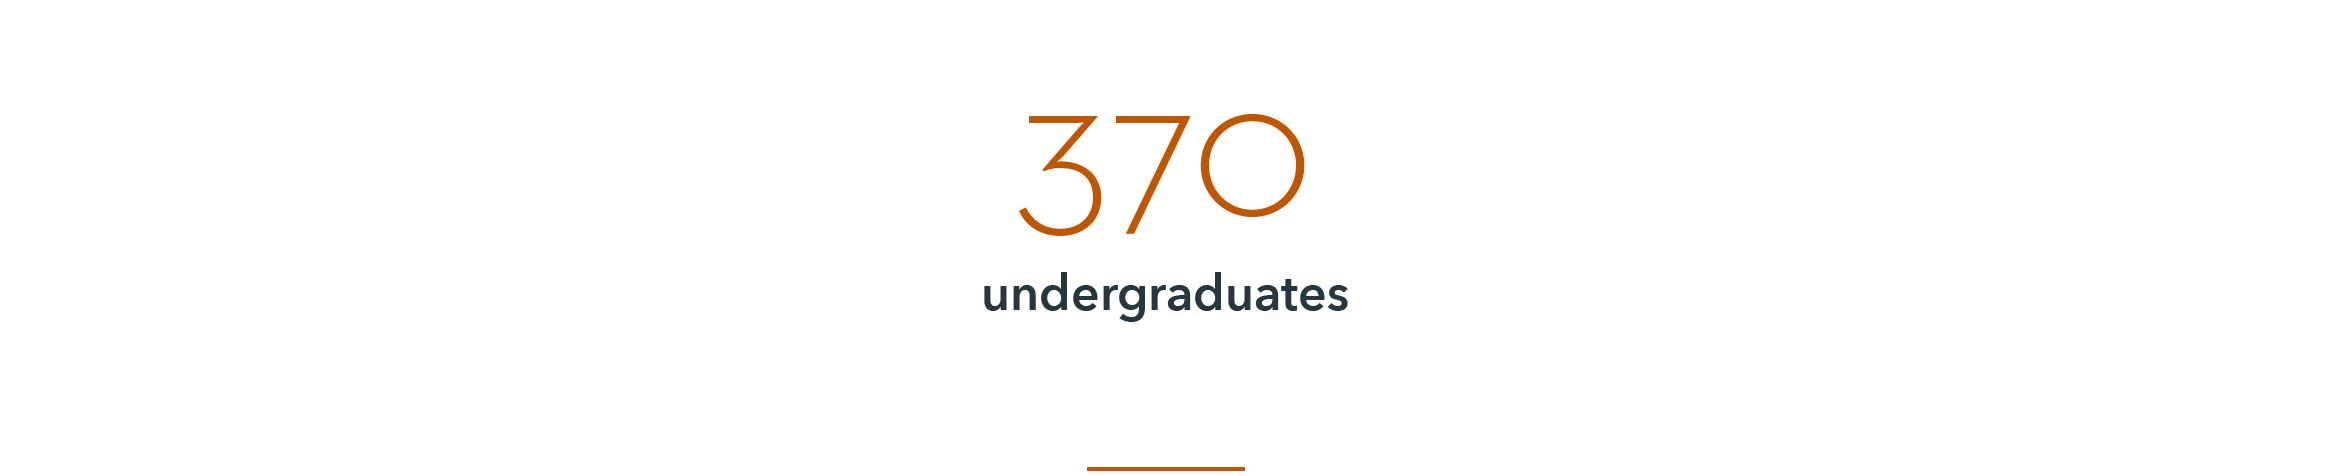 infographic: 370 undergraduates